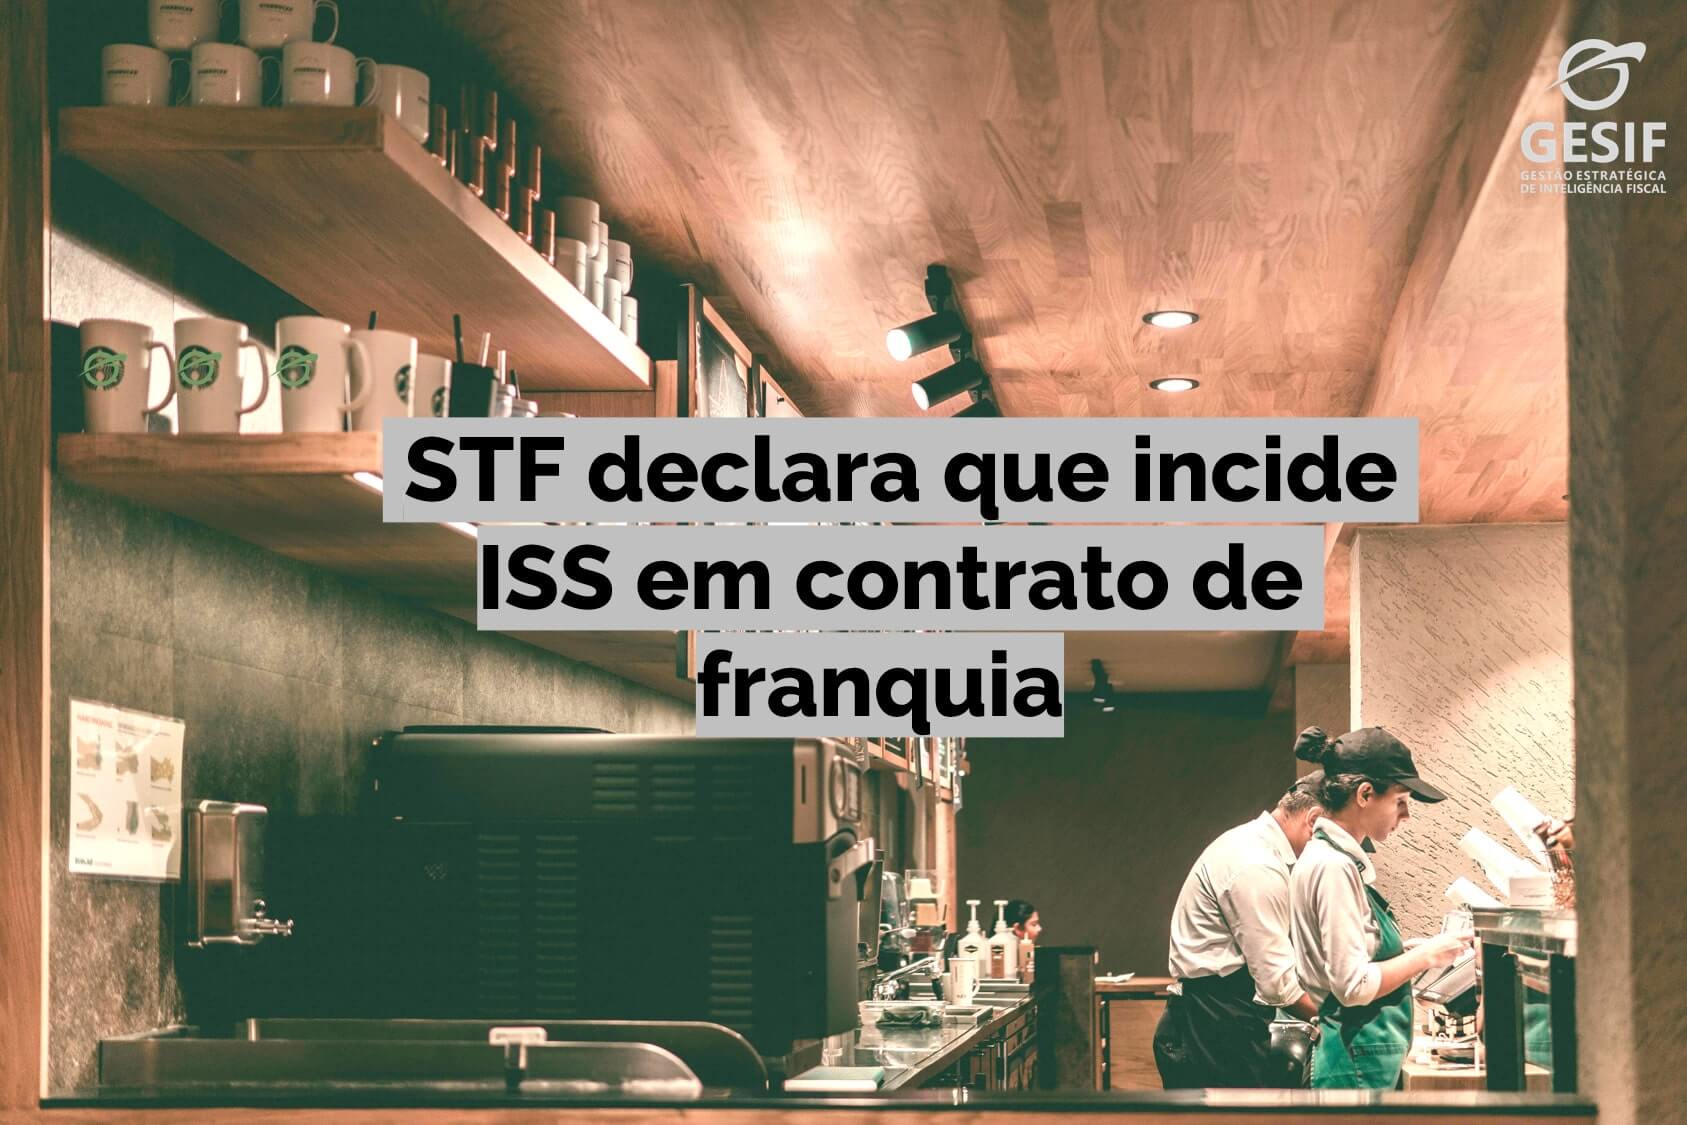 Imagem ilustrativa com a legenda "STF declara que incide ISS em contrato de franquia" escrita no meio.